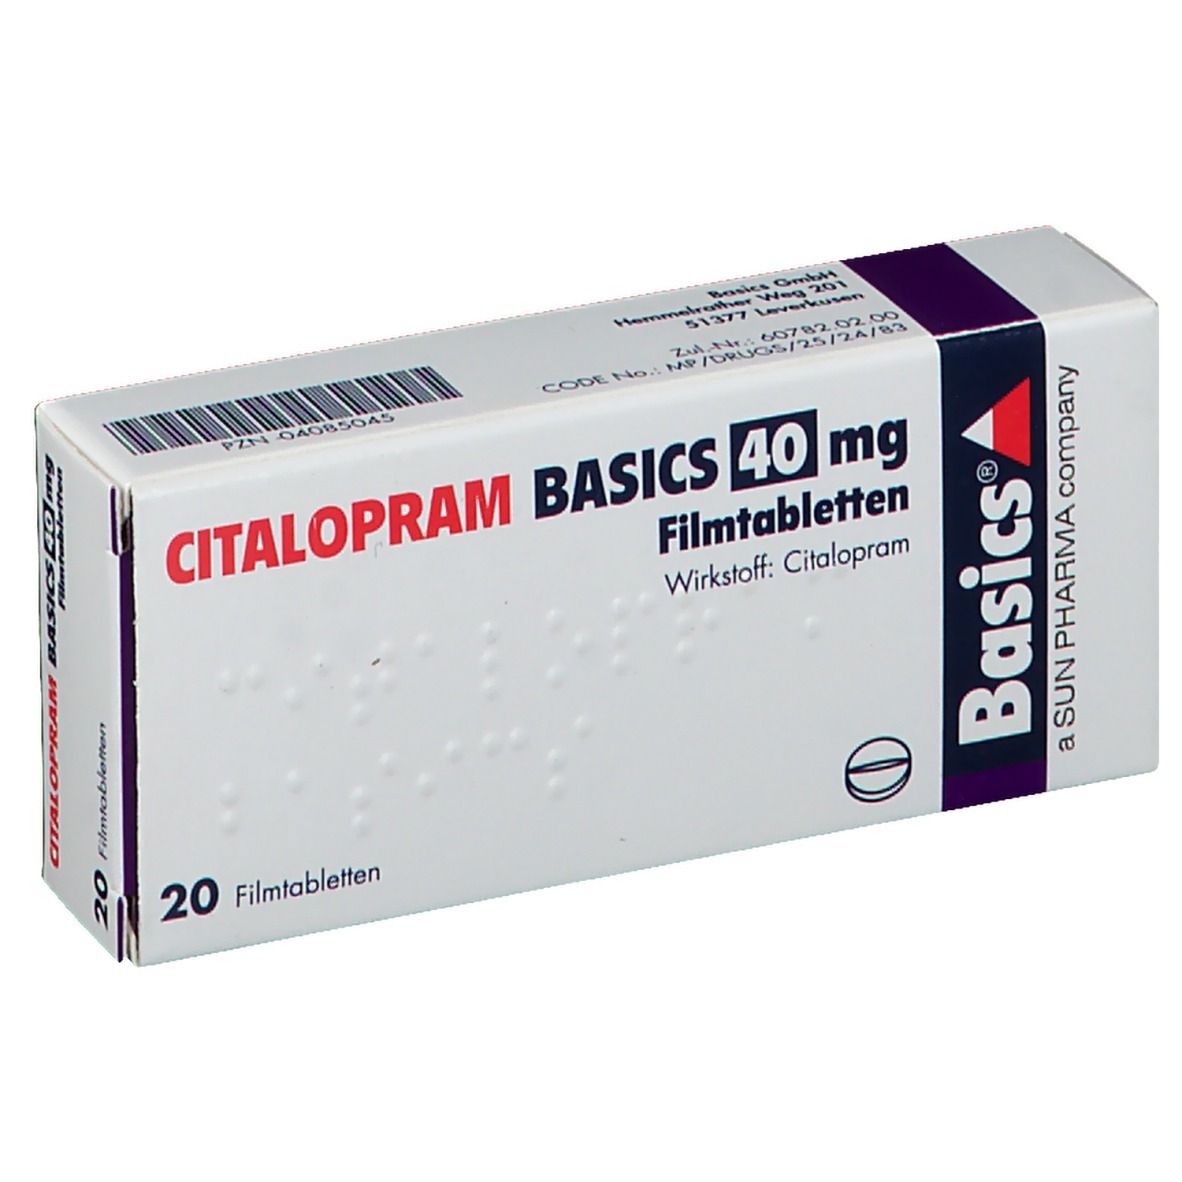 CITALOPRAM BASICS 40 mg